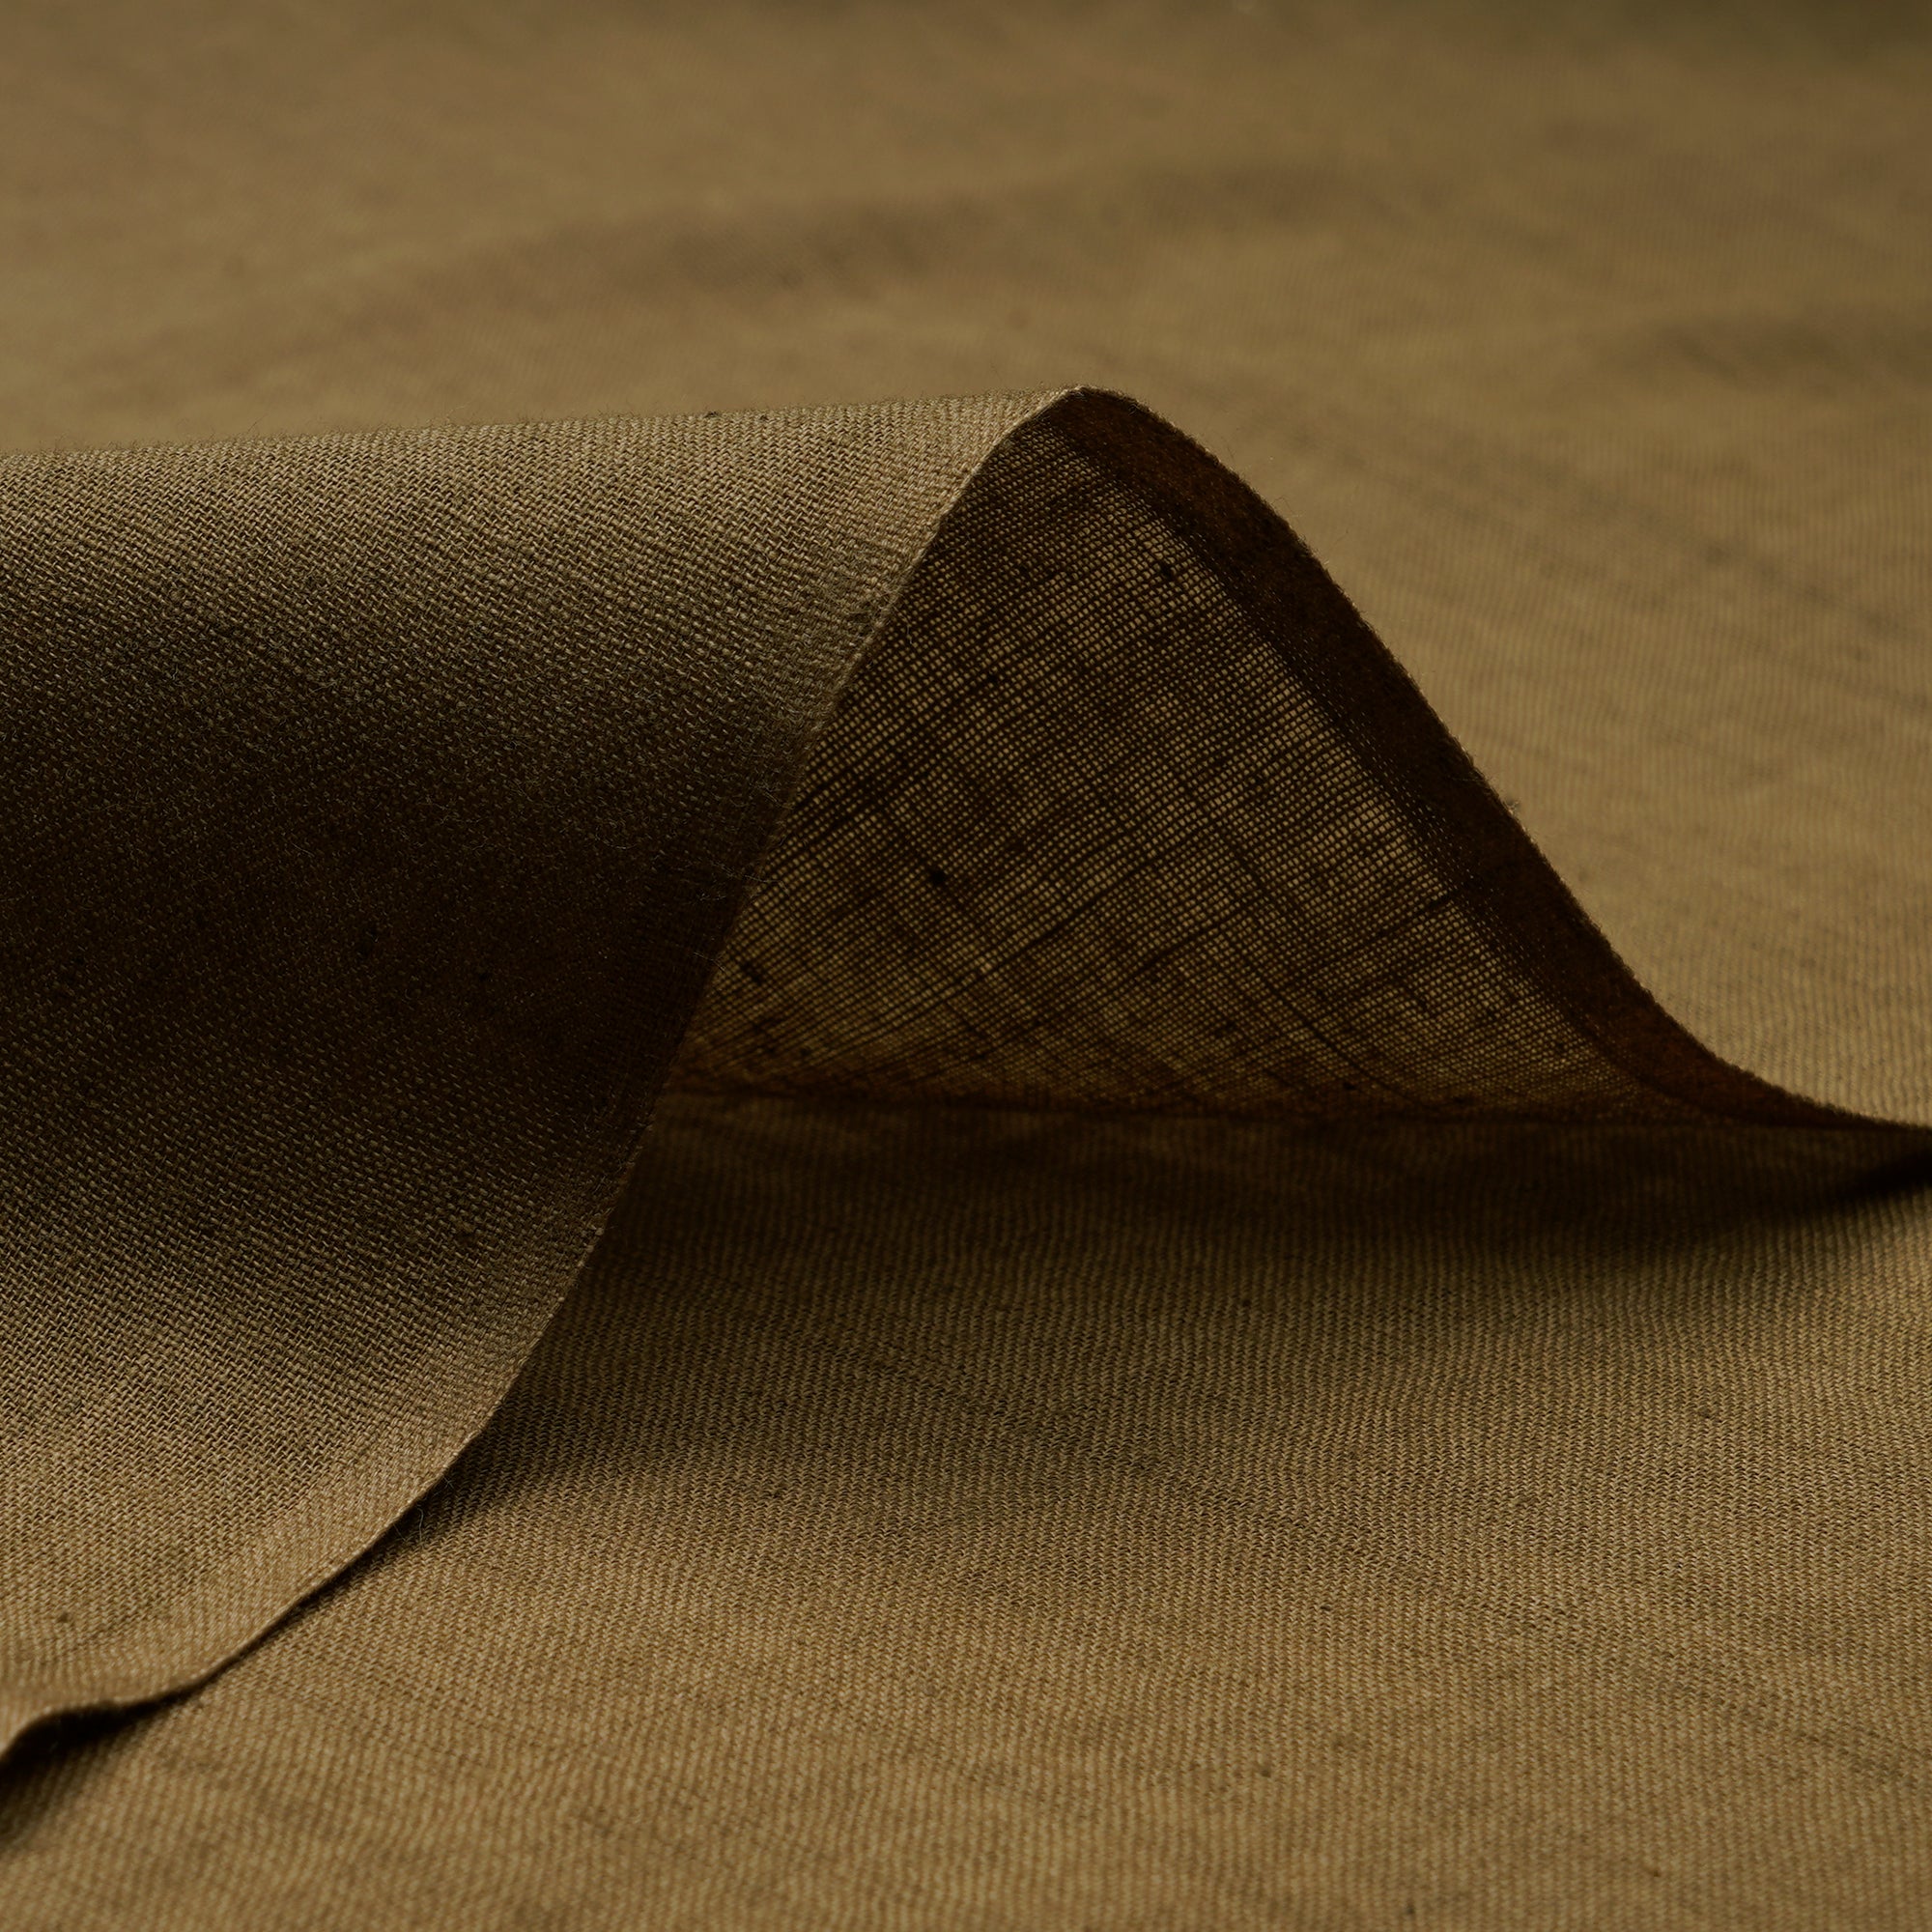 Elmwood Handspun Handwoven Muslin Cotton Fabric